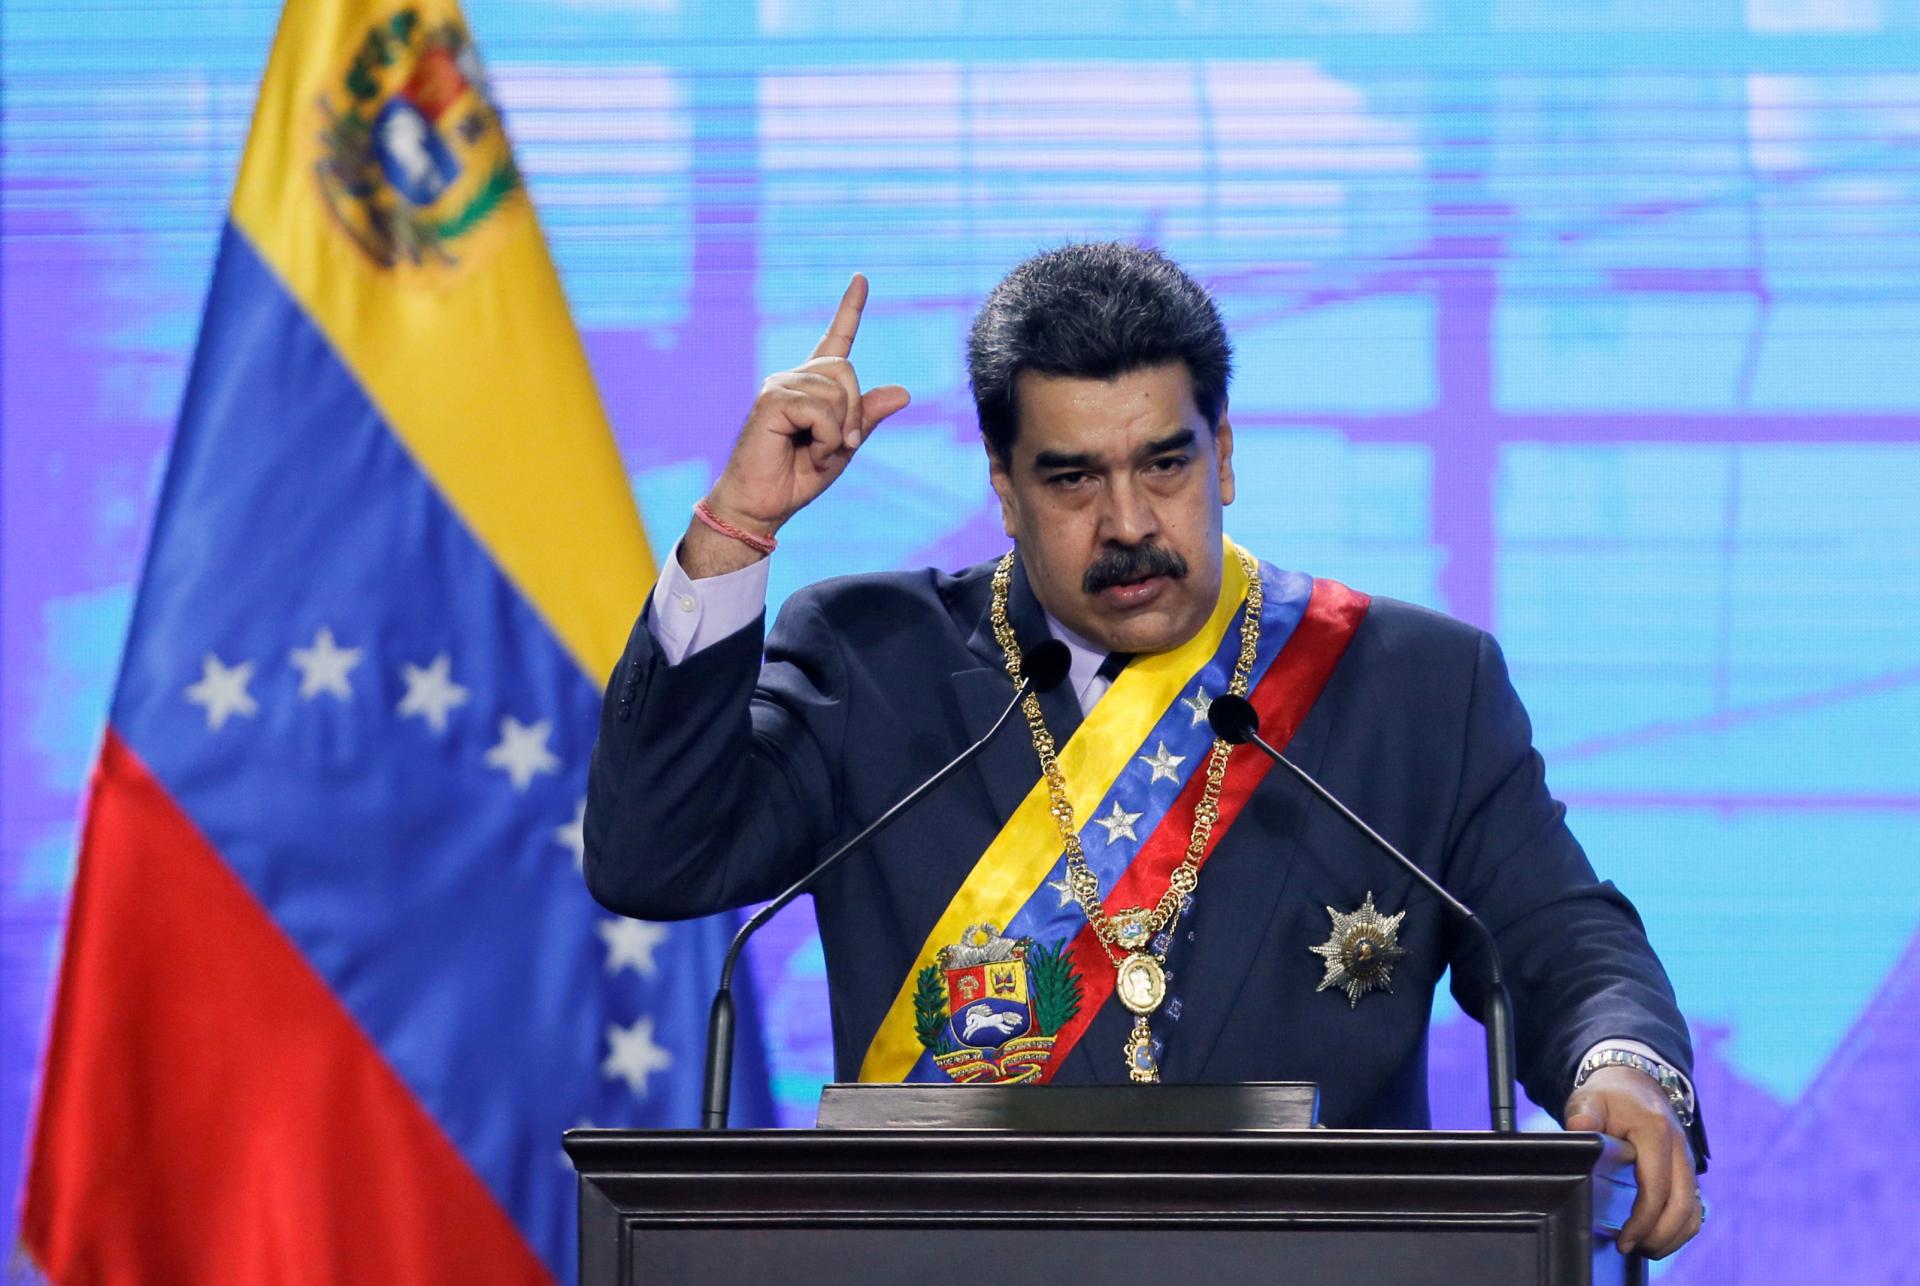 مادورو : امریکا او اروپا د تحریمونو سره وینزویلا ته ۳۰ میلیارده ډالره زیان رسولی دی